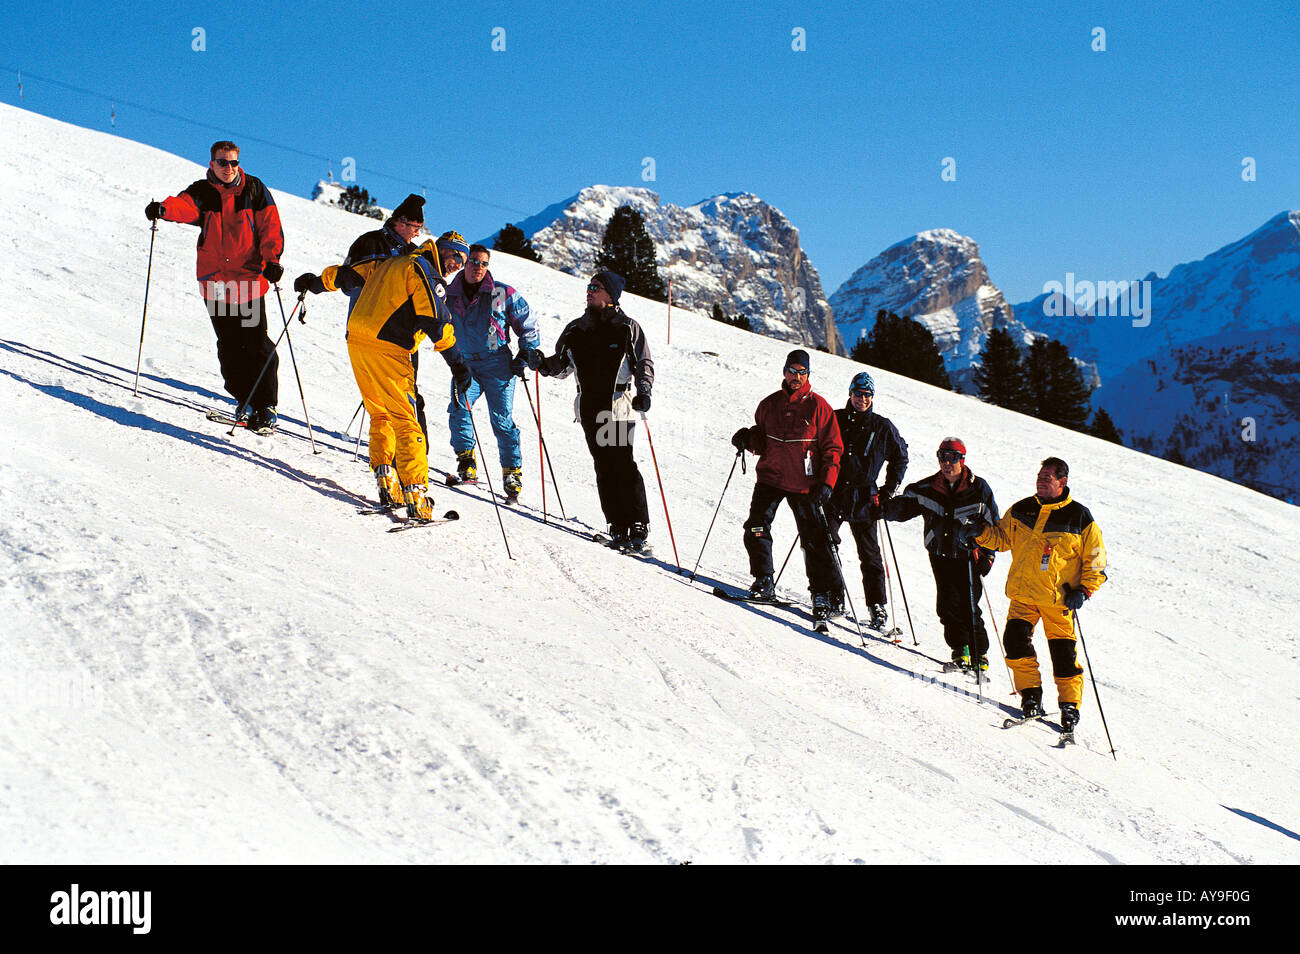 Men in ski lesson on slopes of Passo de Gardena, Selva Gardena, Italy Stock Photo